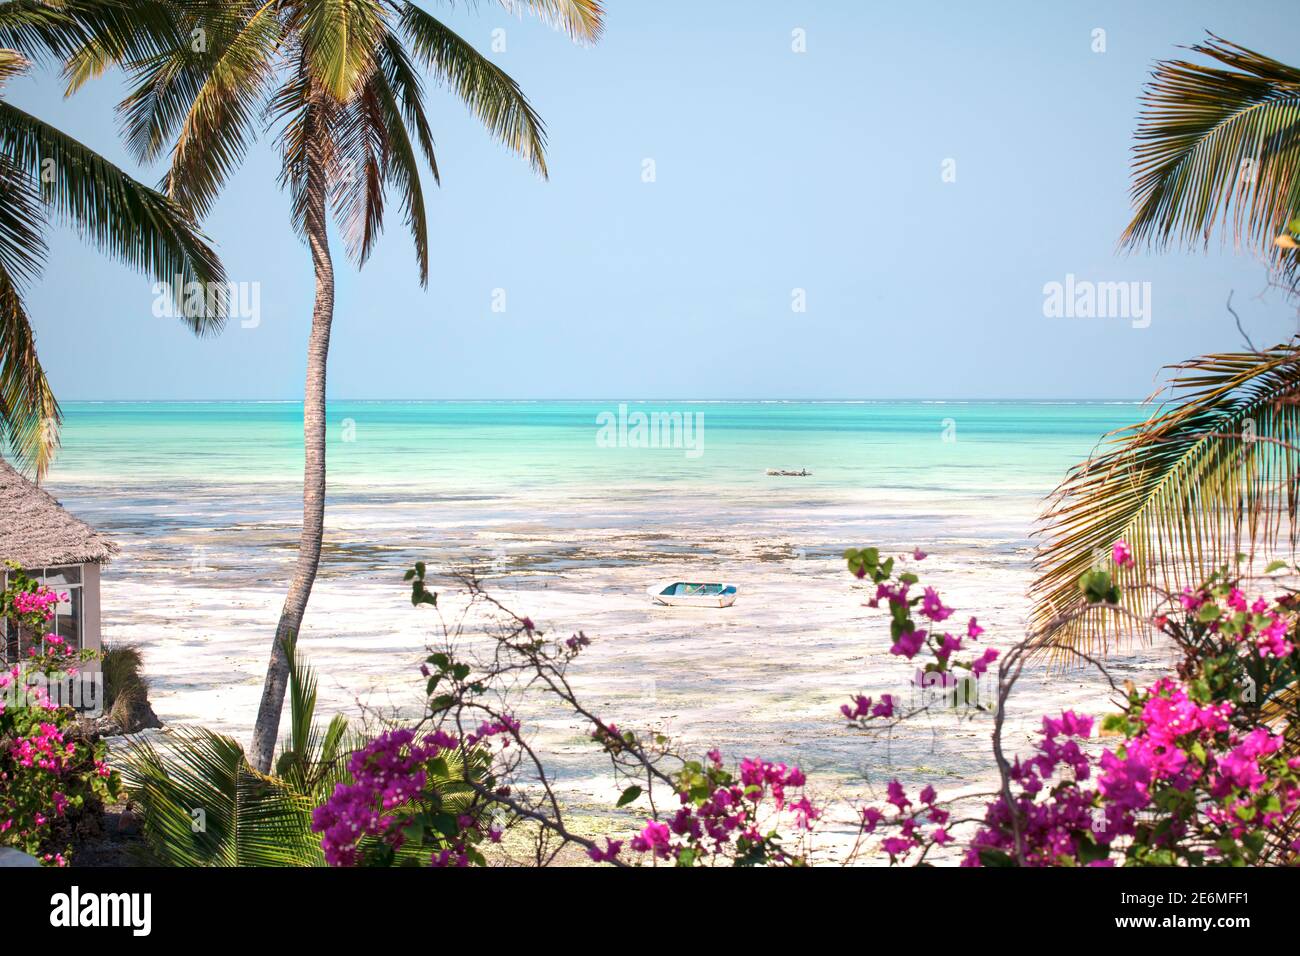 Hermoso paisaje paradisíaco de la isla de Zanzíbar. Clima tropical, playa con océano turquesa, cocoos palmeras, flores, y barco de madera. Foto de stock